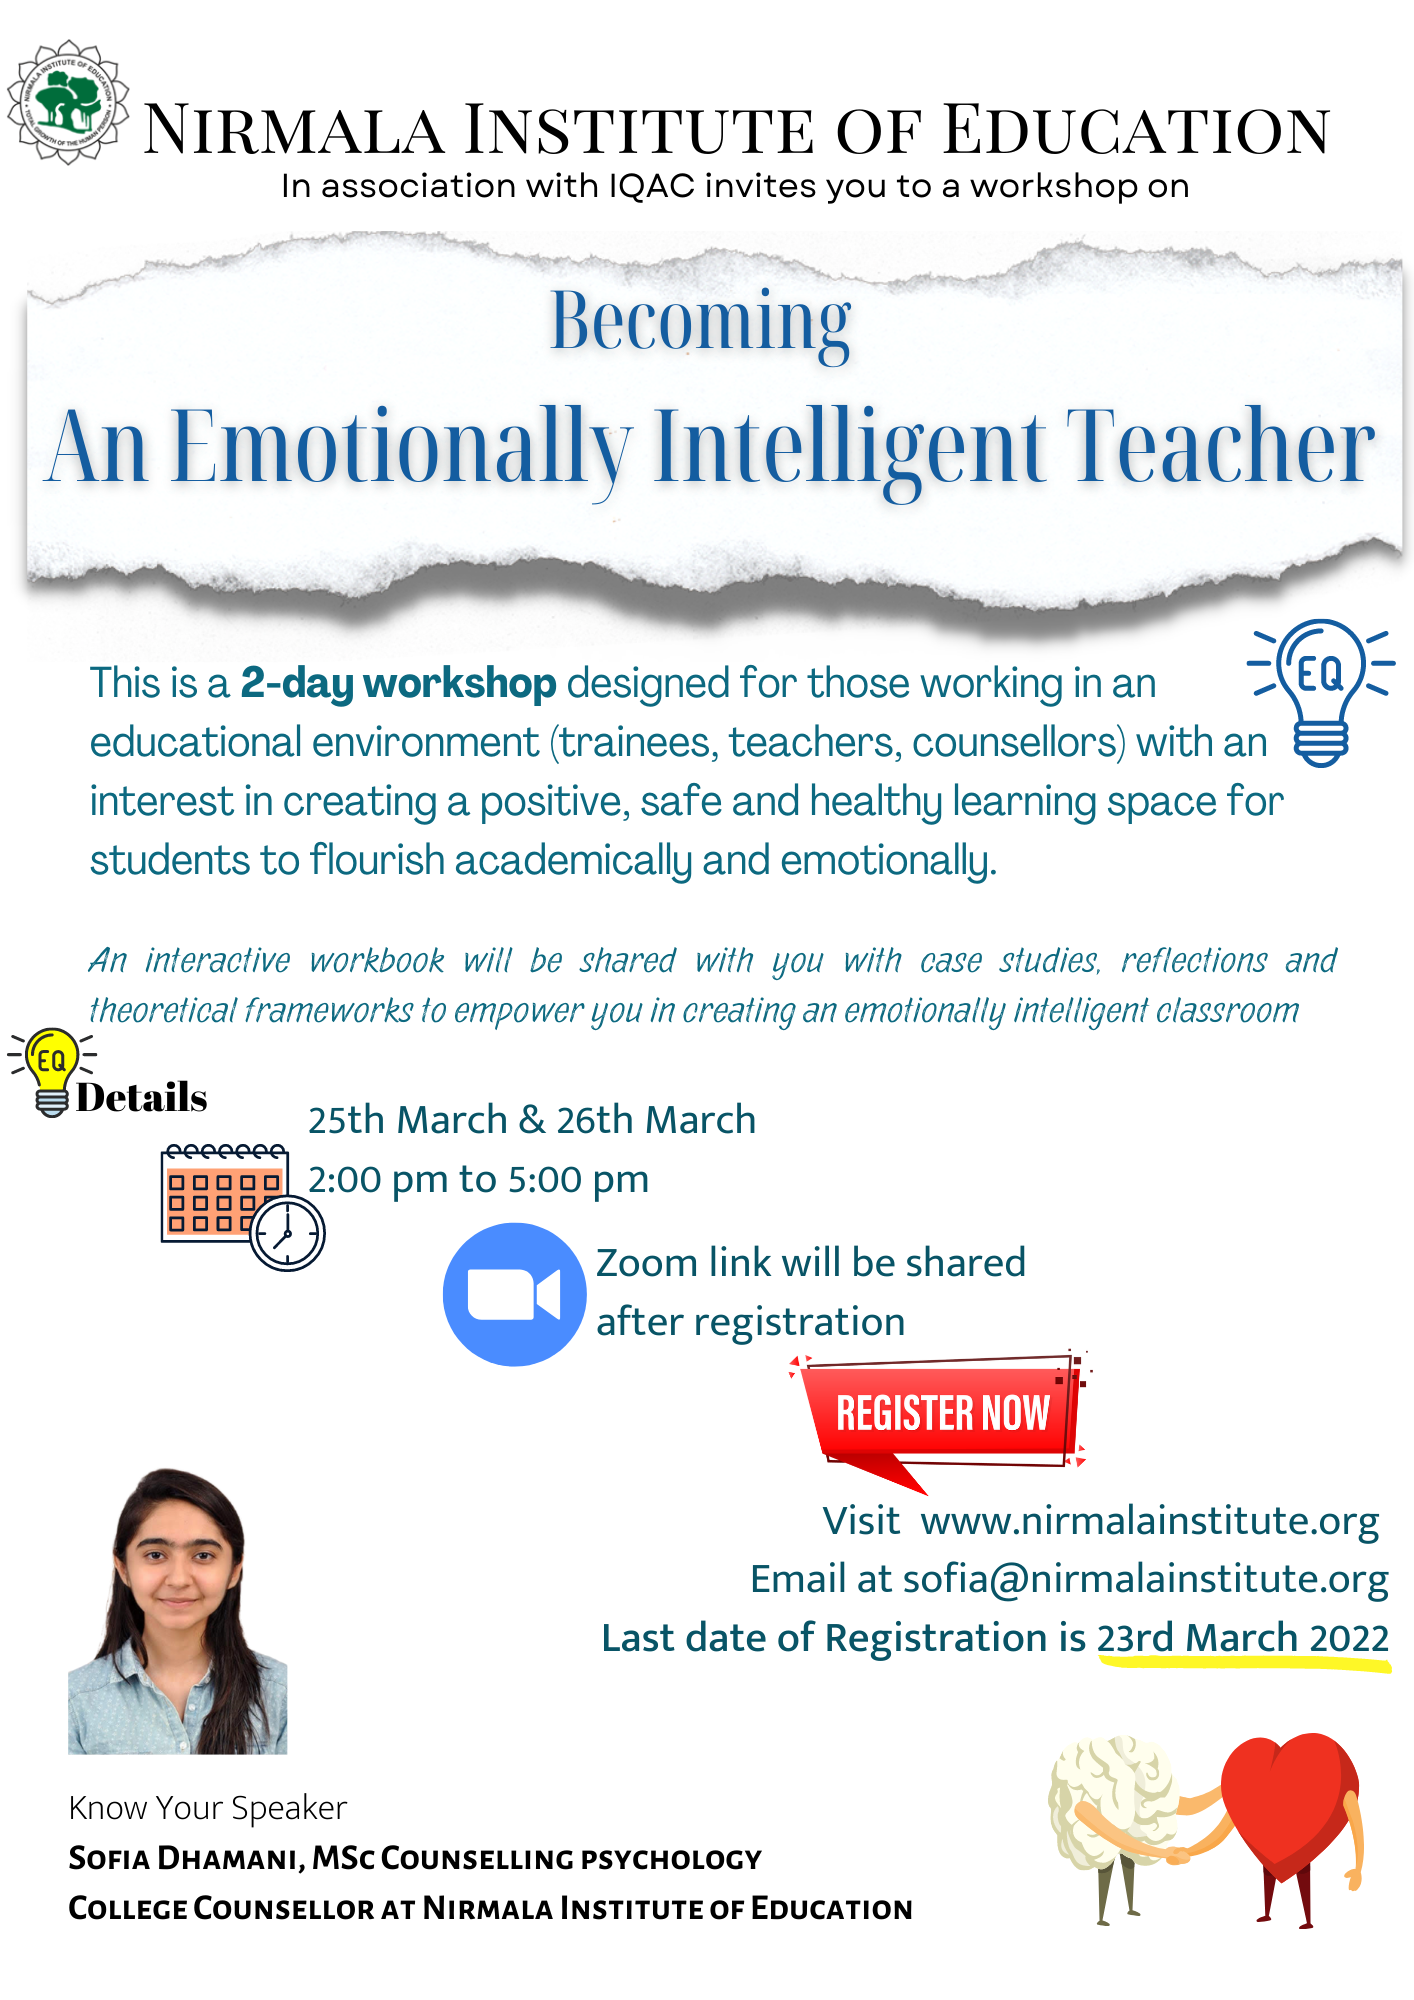  Becoming An Emotionally Intelligent Teacher.